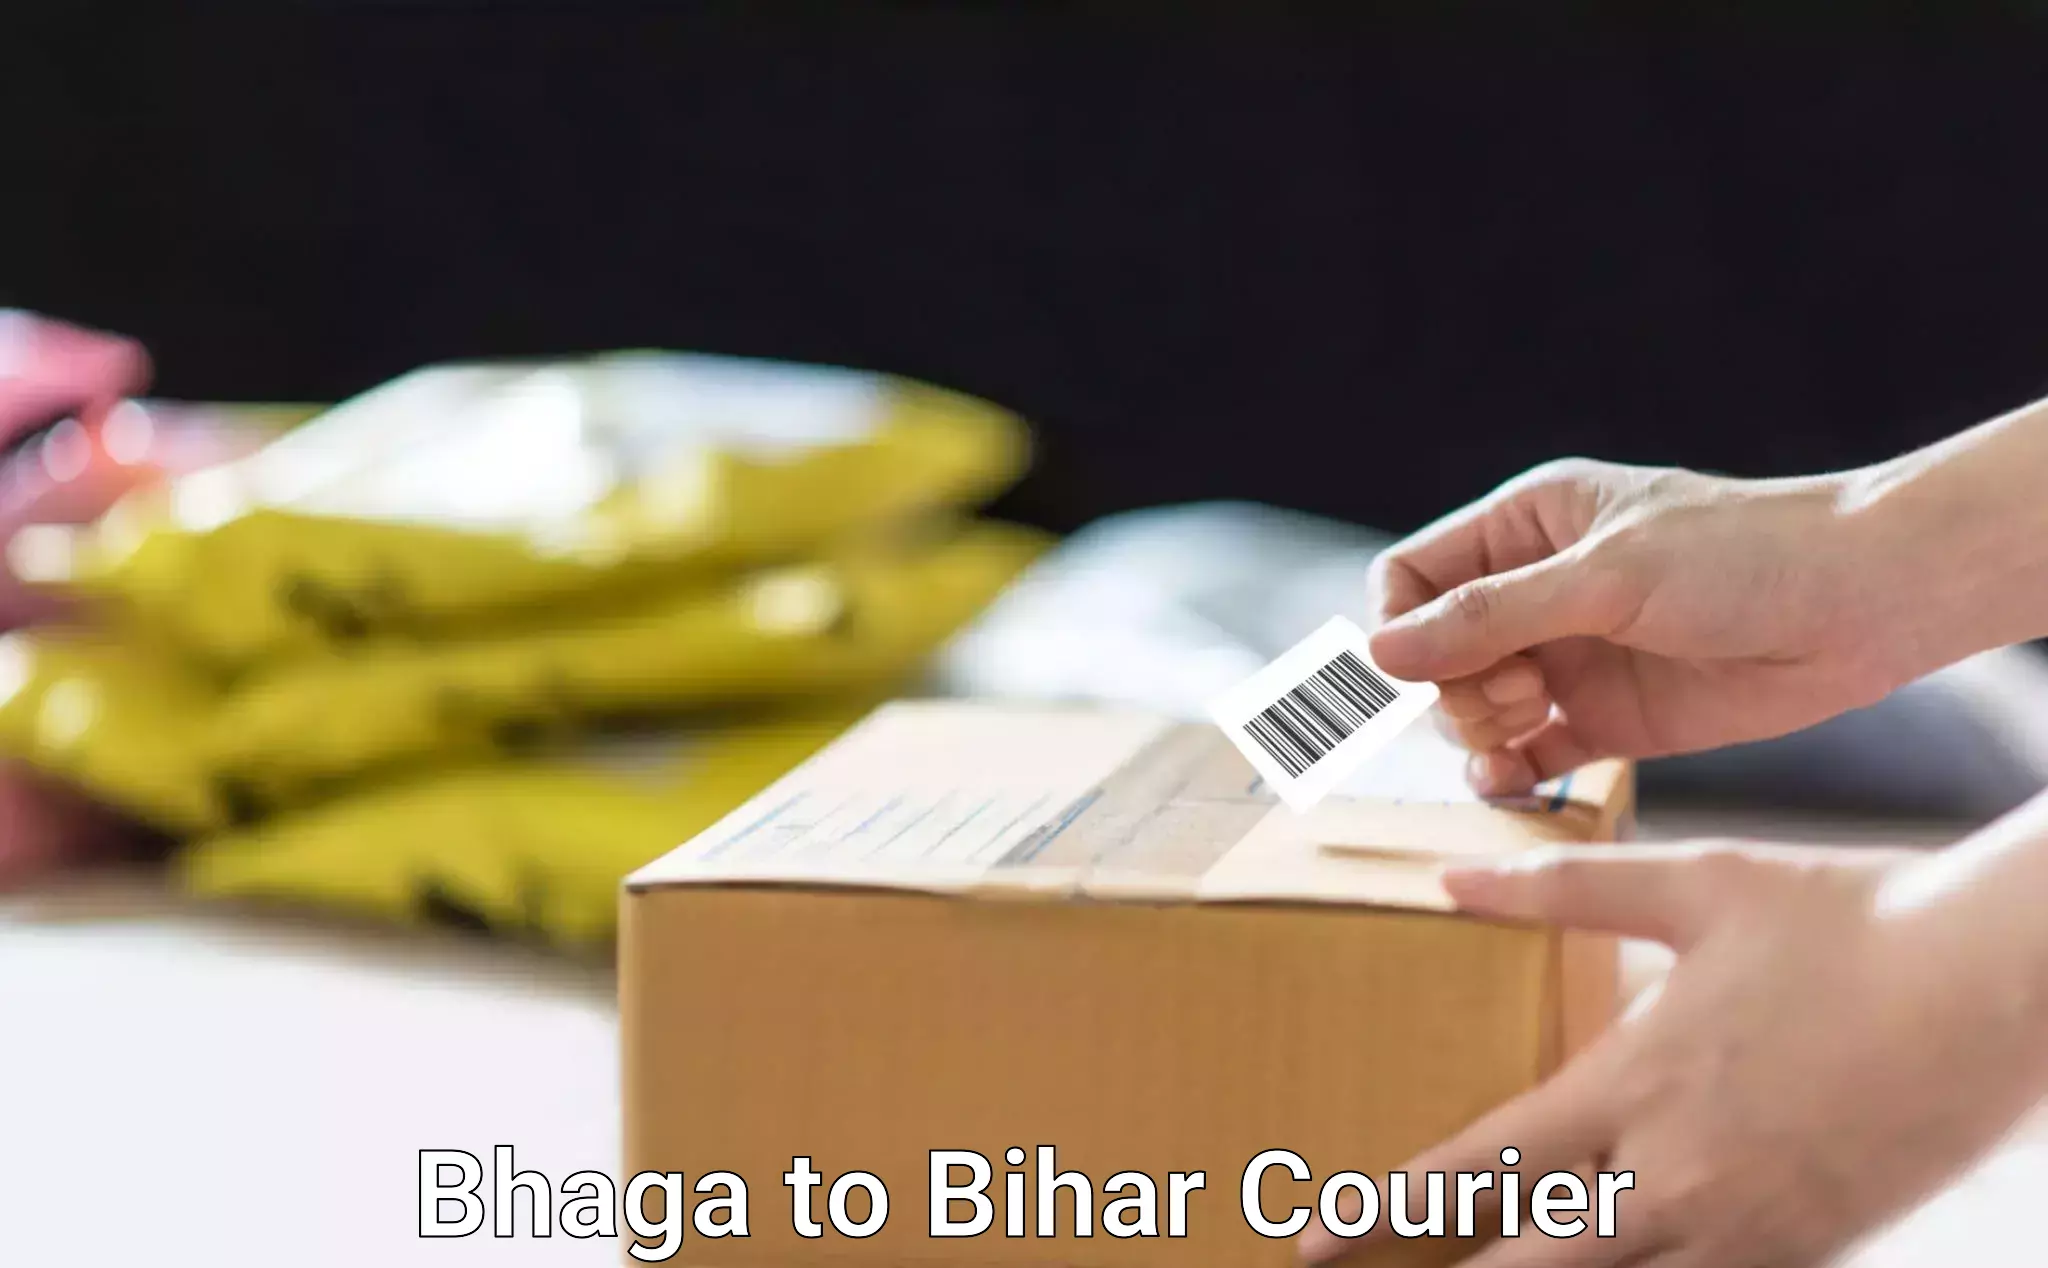 Next-day freight services Bhaga to Saharsa